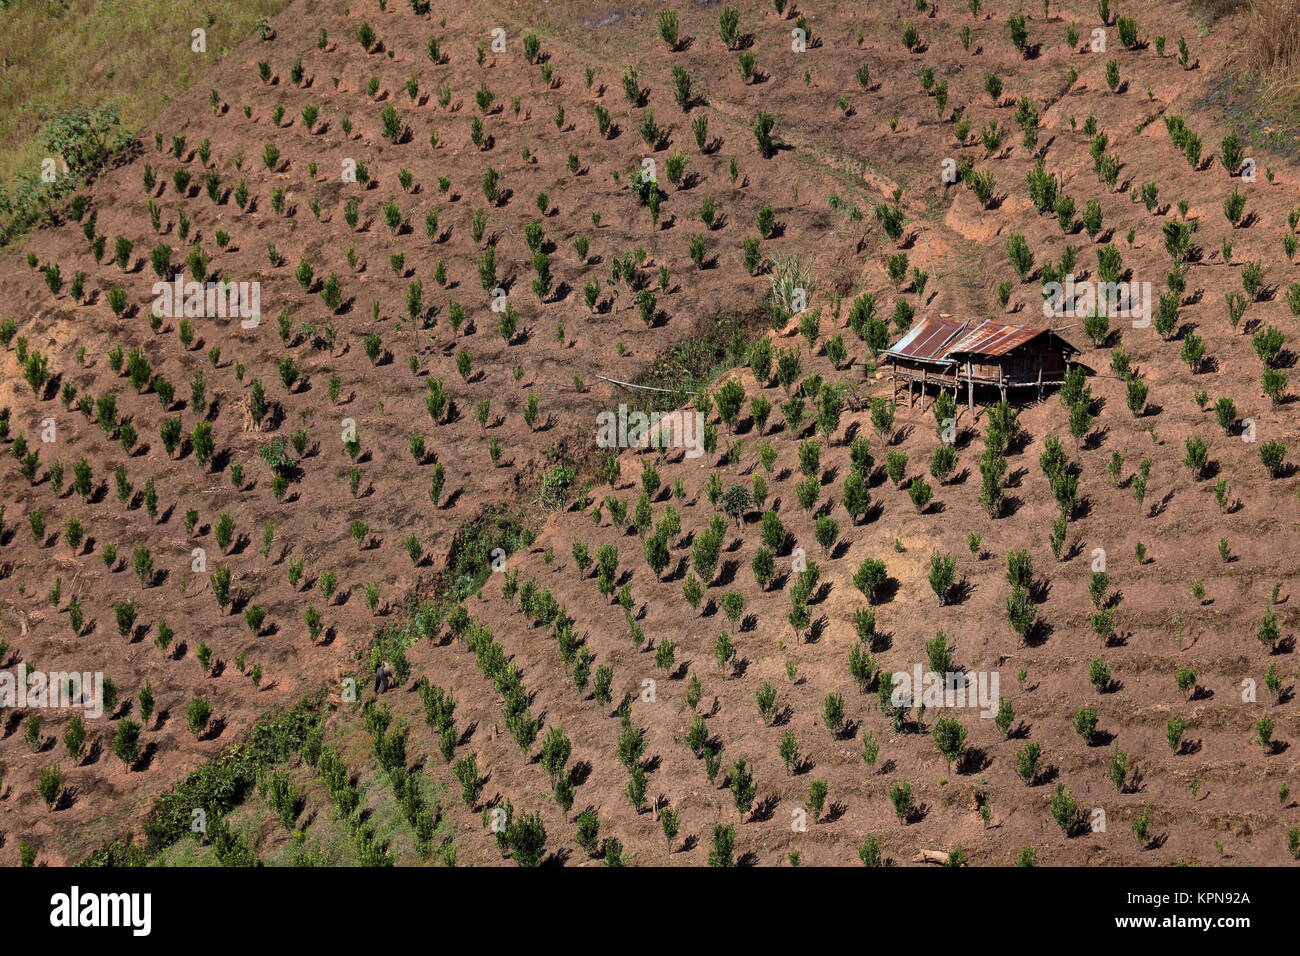 Las plantaciones de té en myanmar Foto de stock